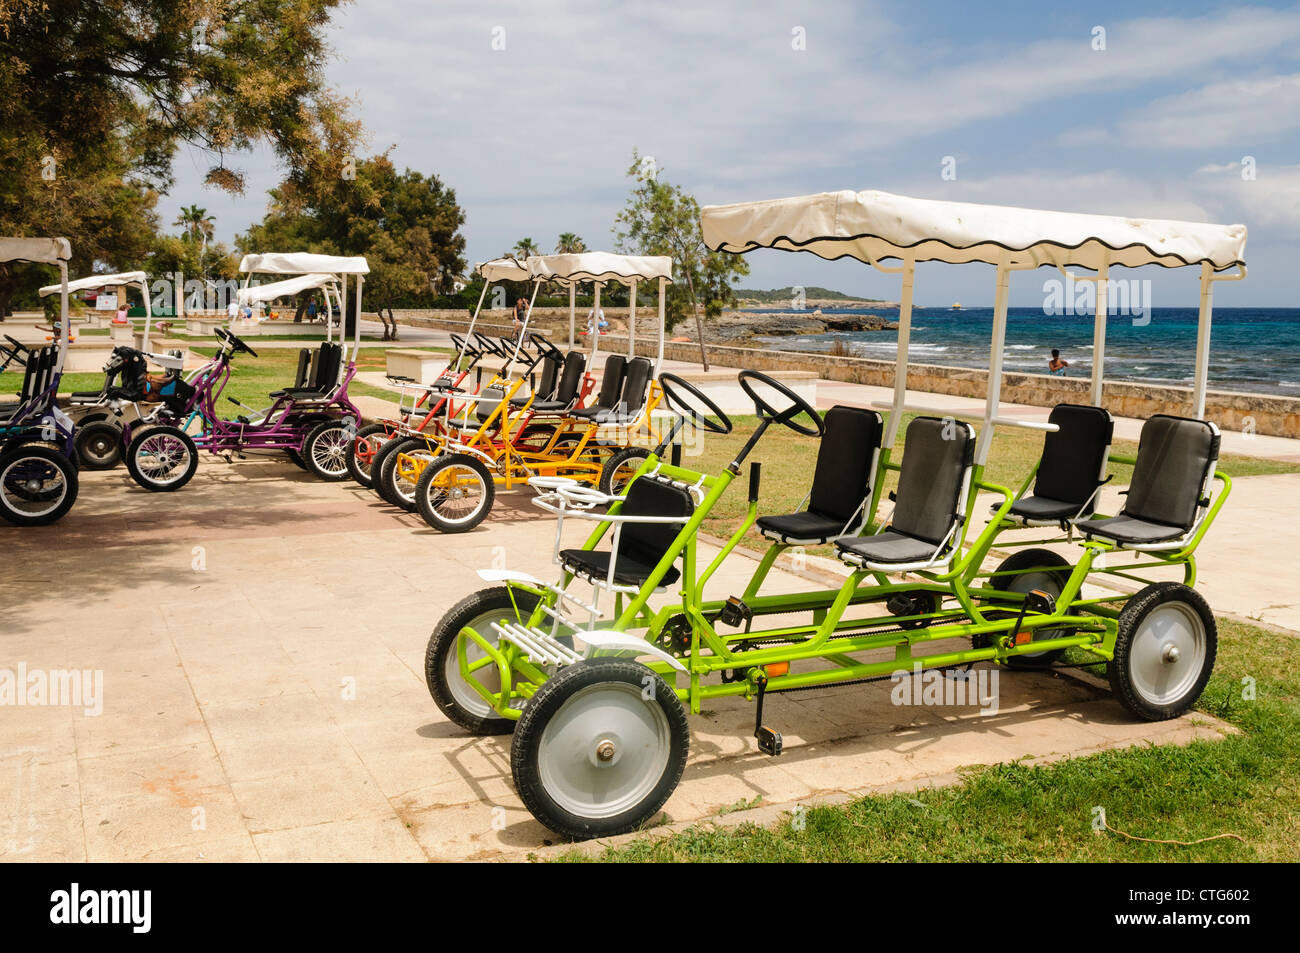 La selezione delle quattro ruote e 4 sedile ciclo turistica come visto in molti stabilimenti balneari Foto Stock